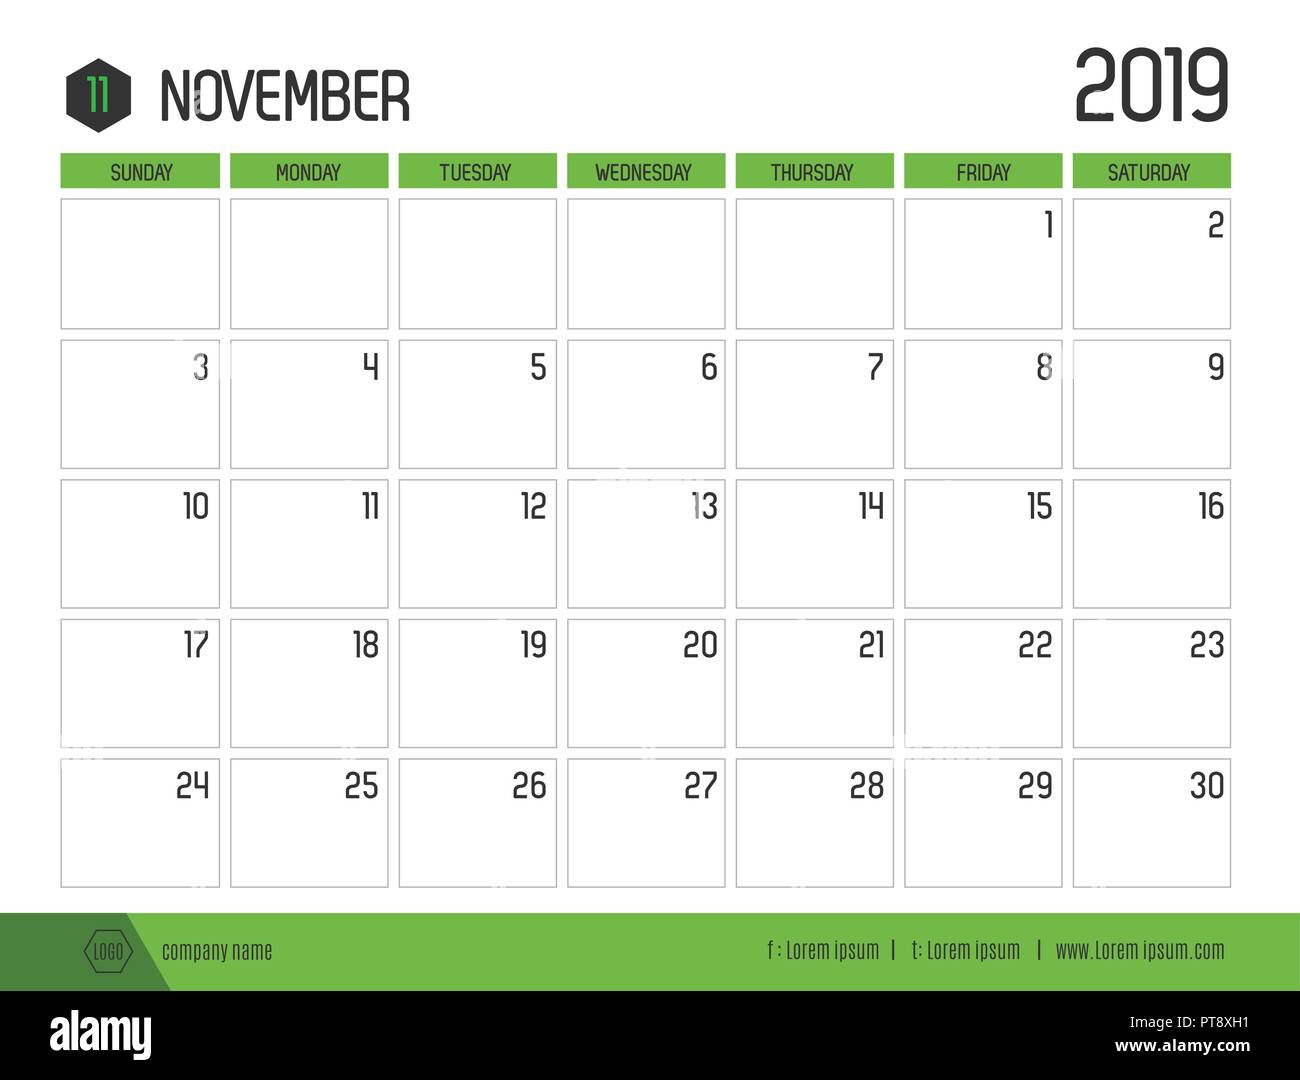 Vecteur de vert moderne ( 2019 ) novembre calendrier simple à nettoyer table style.full size 21 x 16 cm ; début de la semaine le dimanche Illustration de Vecteur